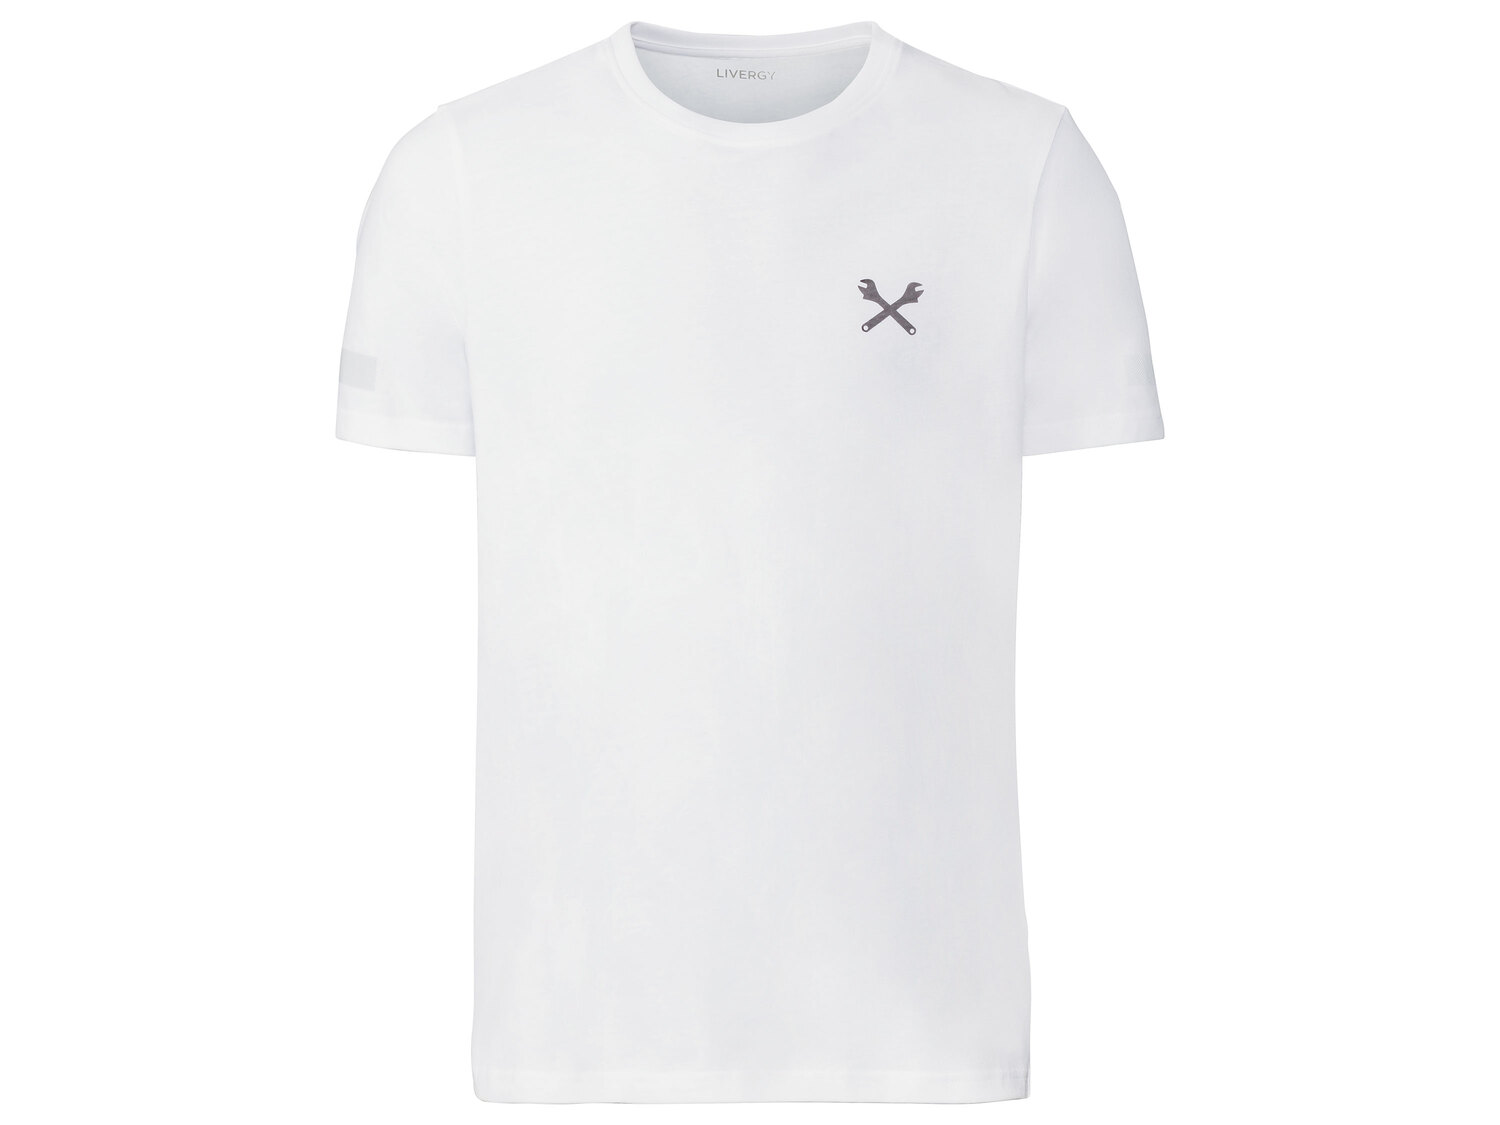 T-shirt , le prix 3.99 € 
- Du S au XL selon modèle
- Ex. 100 % coton
- Des ...